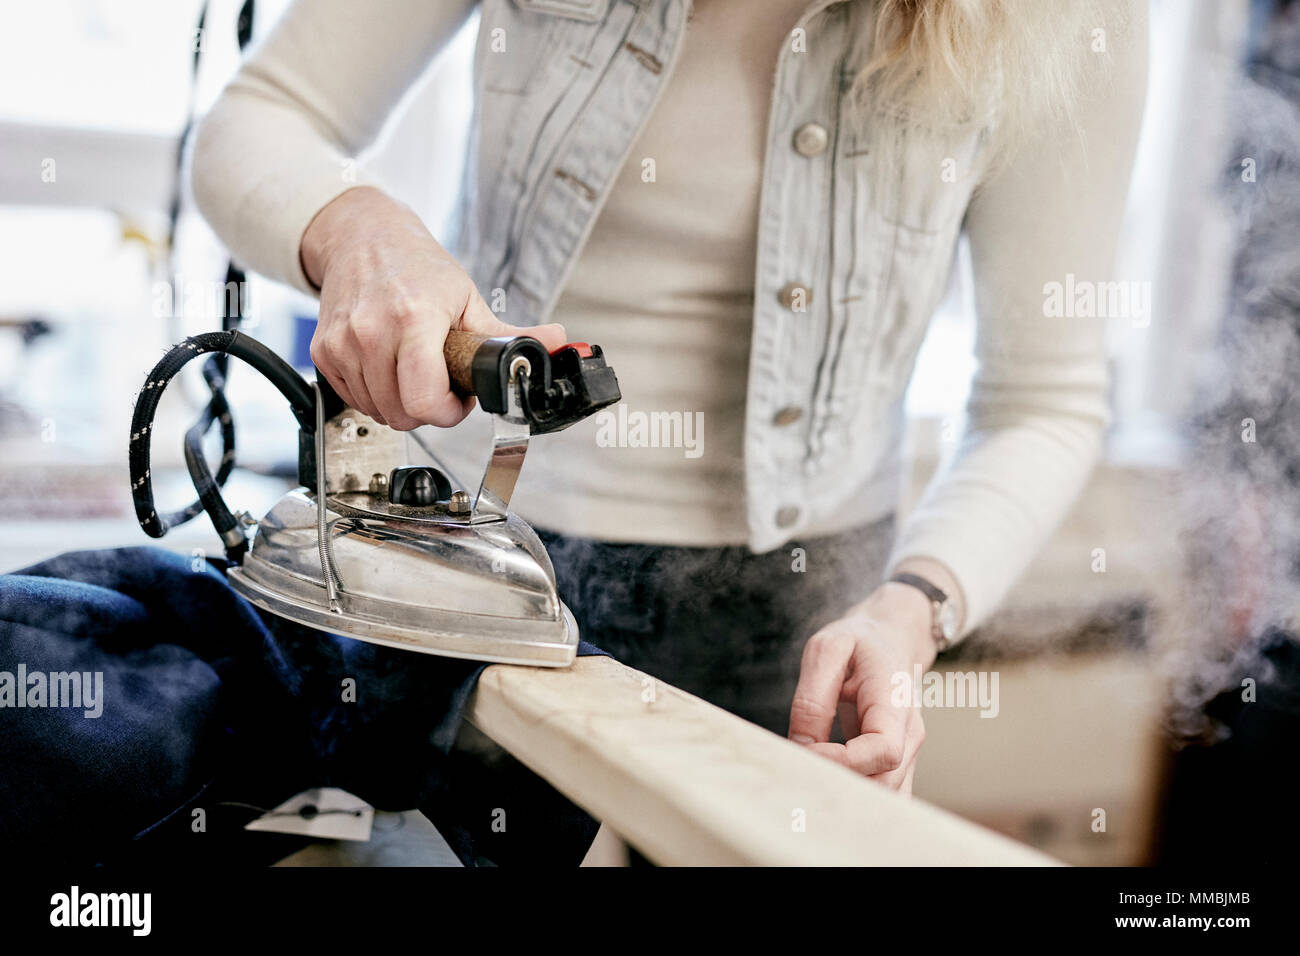 Une femme à l'aide d'un fer à repasser à vapeur sur une nouvelle veste, appuyant sur le fait nouveau vêtement. Banque D'Images